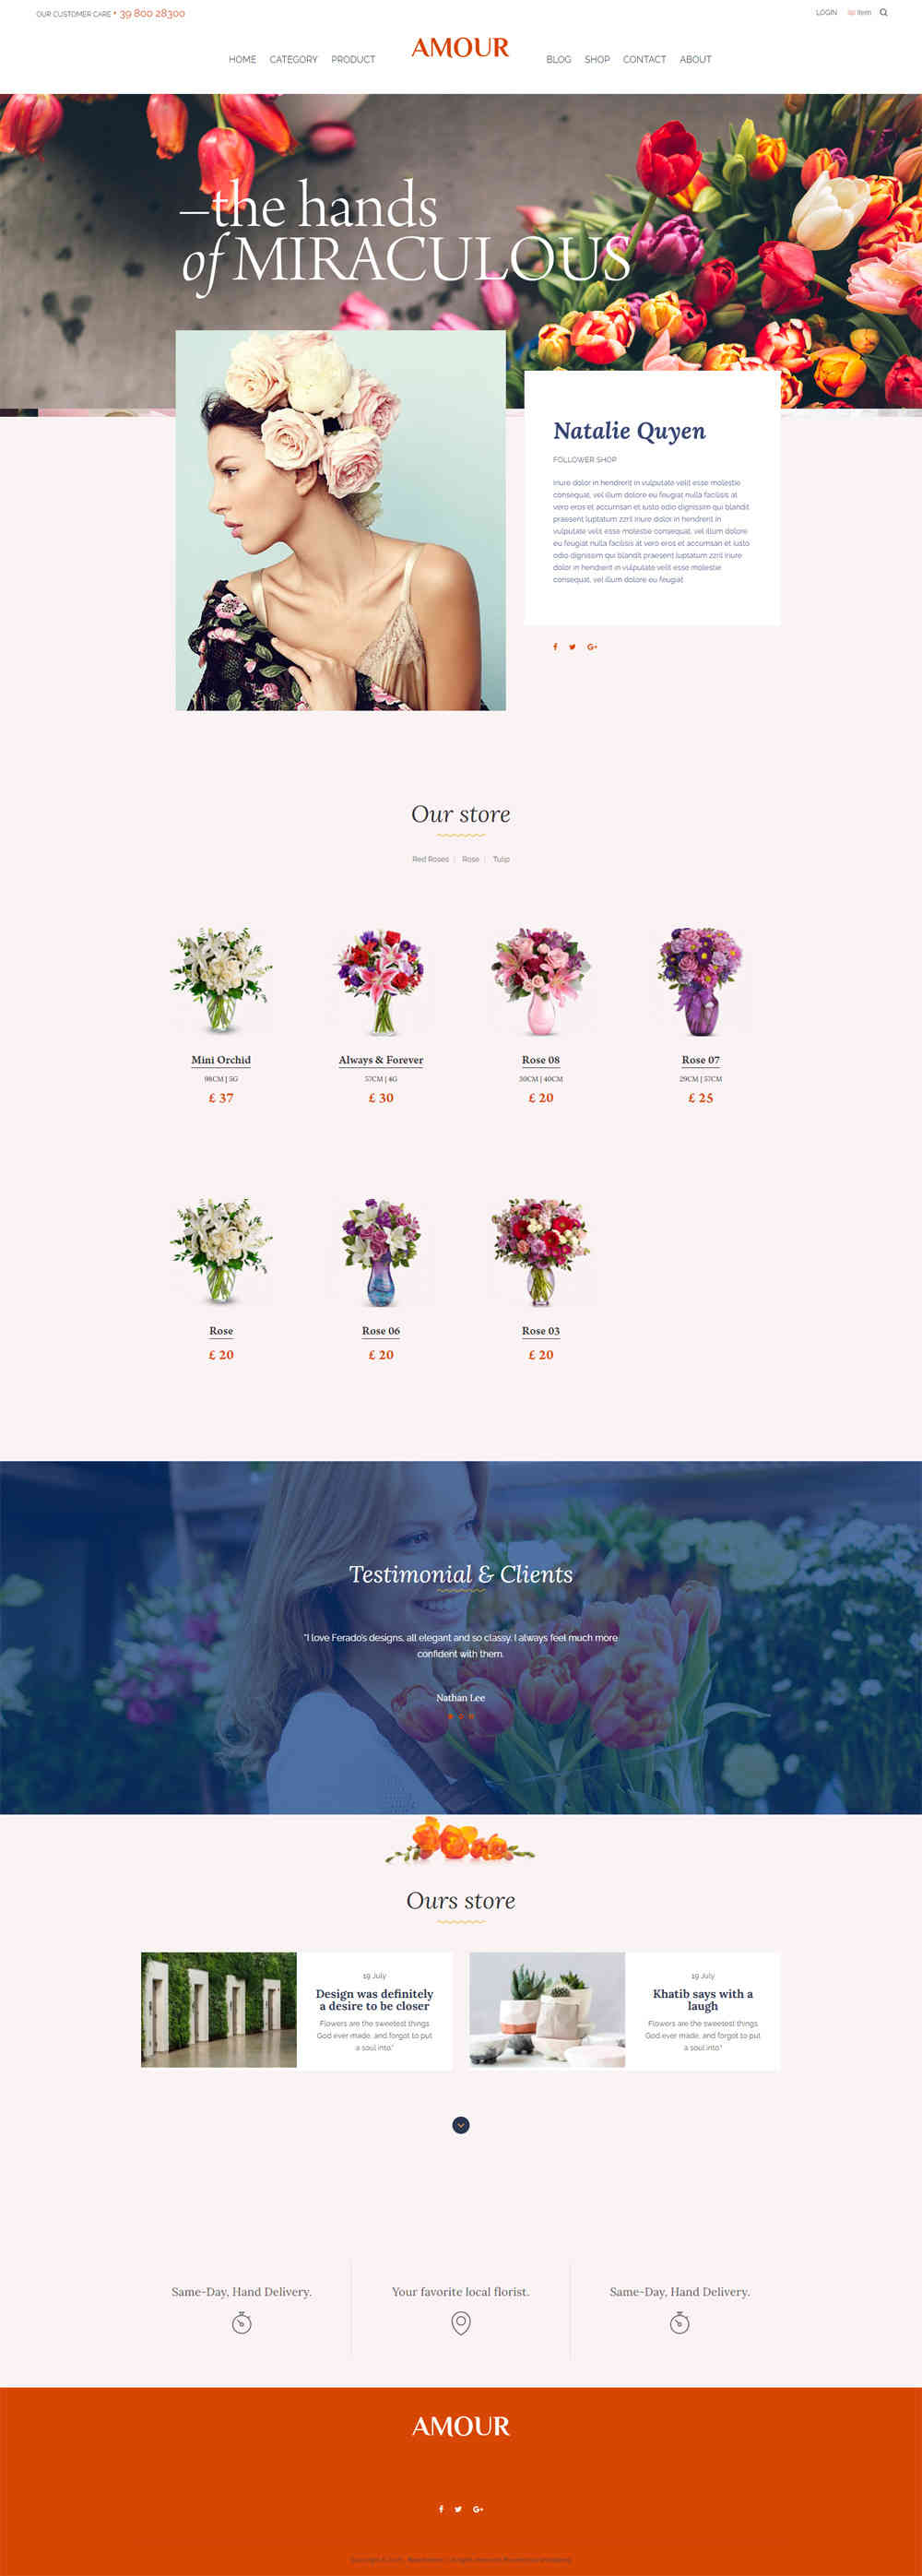 thiet ke website tmi flowershop 10020